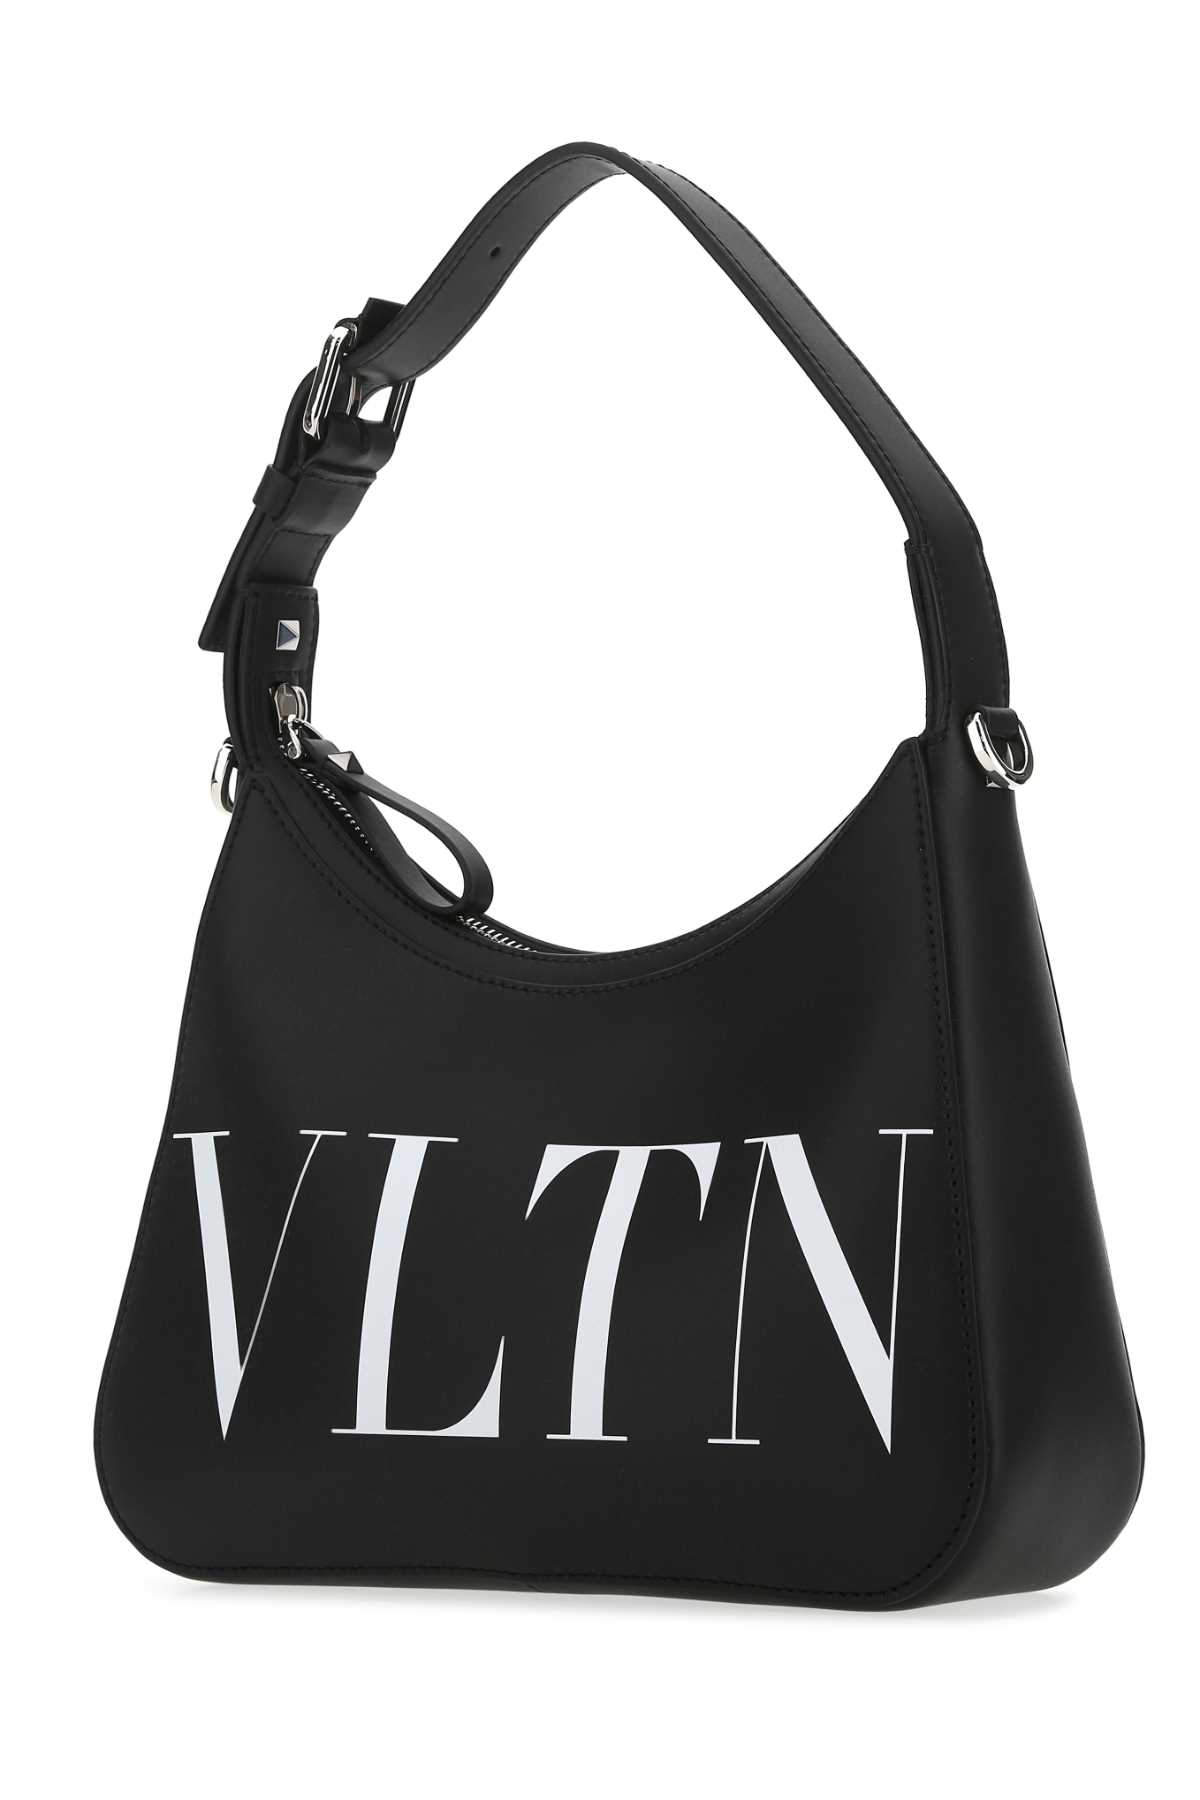 Valentino Garavani Black Leather Vltn Handbag In 0ni